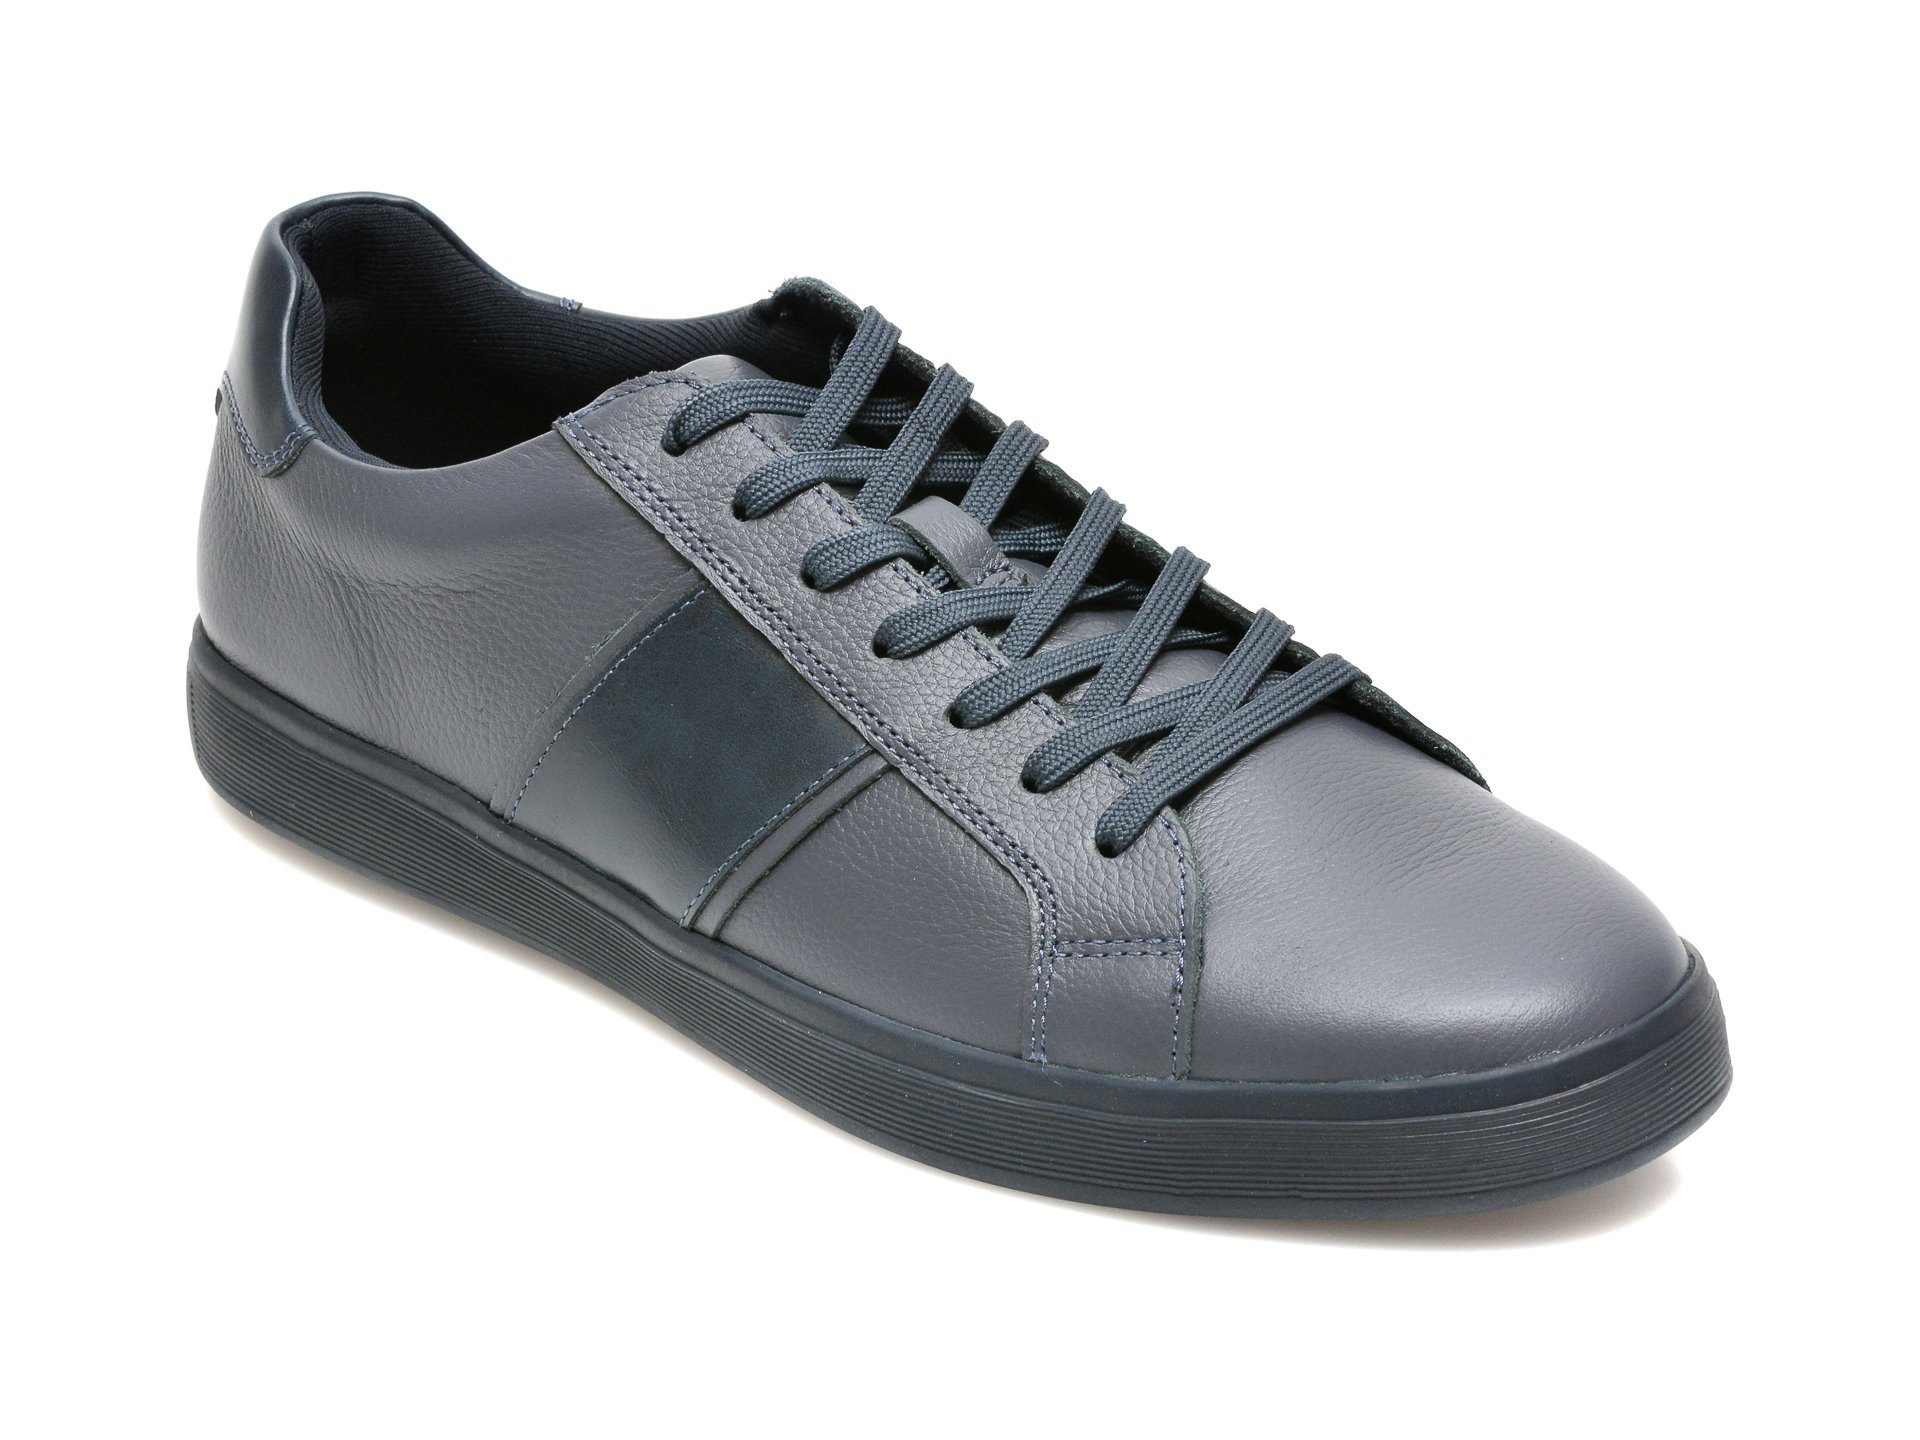 Pantofi ALDO bleumarin, COWIEN410, din piele naturala Aldo imagine reduceri